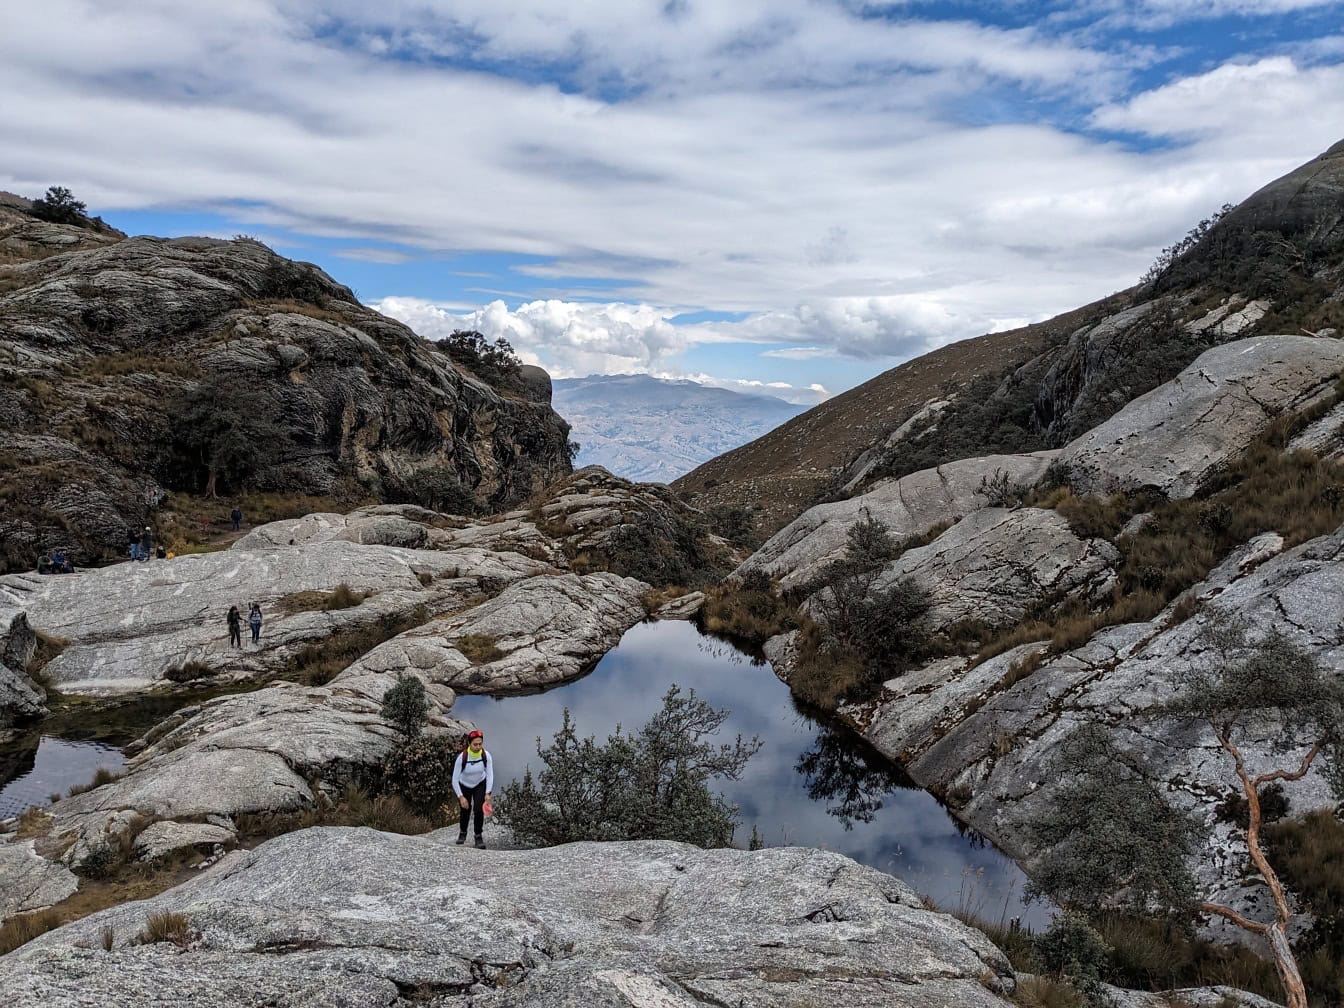 Ένας ορειβάτης στέκεται στη βραχώδη όχθη μιας μικρής ορεινής λίμνης στη μέση των βουνών σε ένα φυσικό πάρκο στο Περού